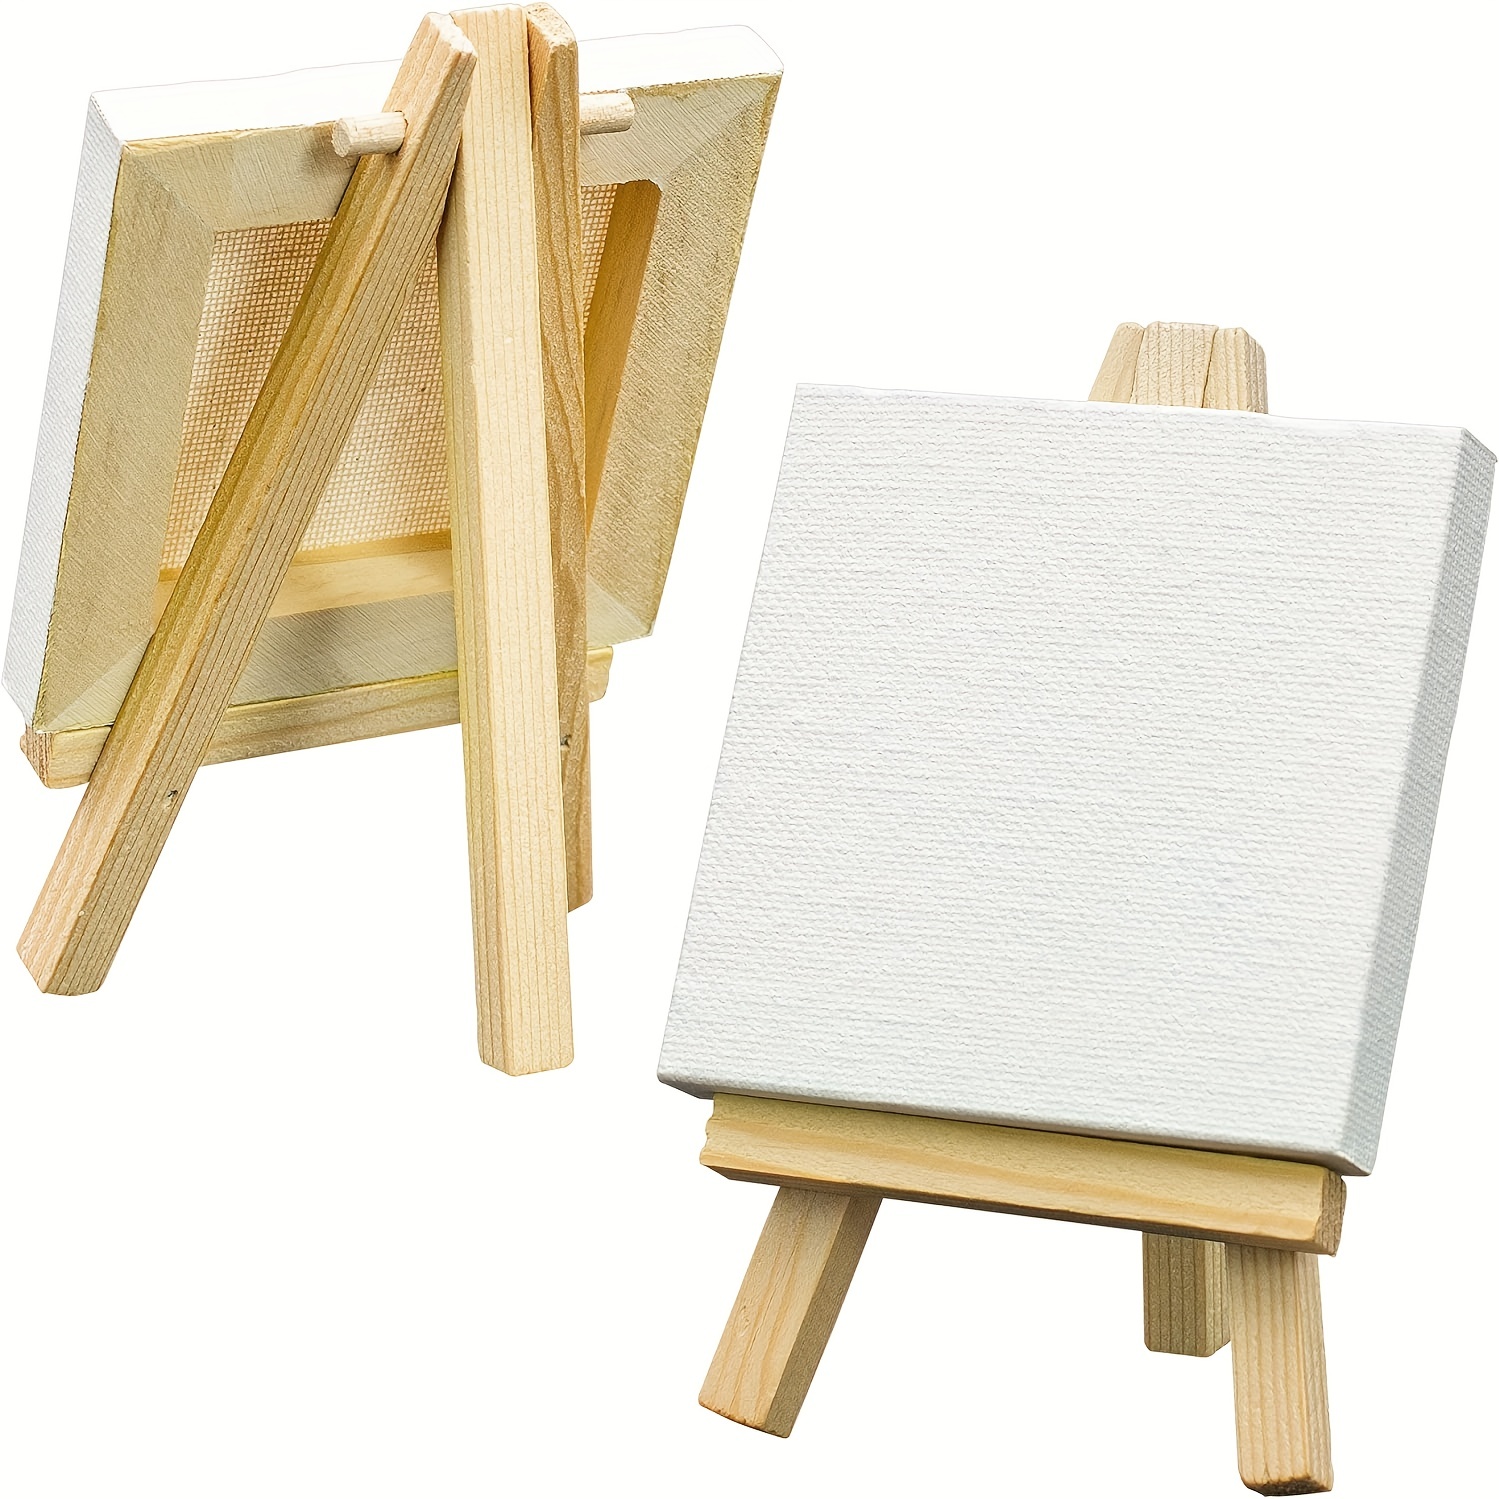  Juego de caballetes de madera de 9.4 pulgadas de alto,  caballetes de mesa, caballete de pintura para artistas, adultos,  estudiantes (paquete de 6) : Arte y Manualidades